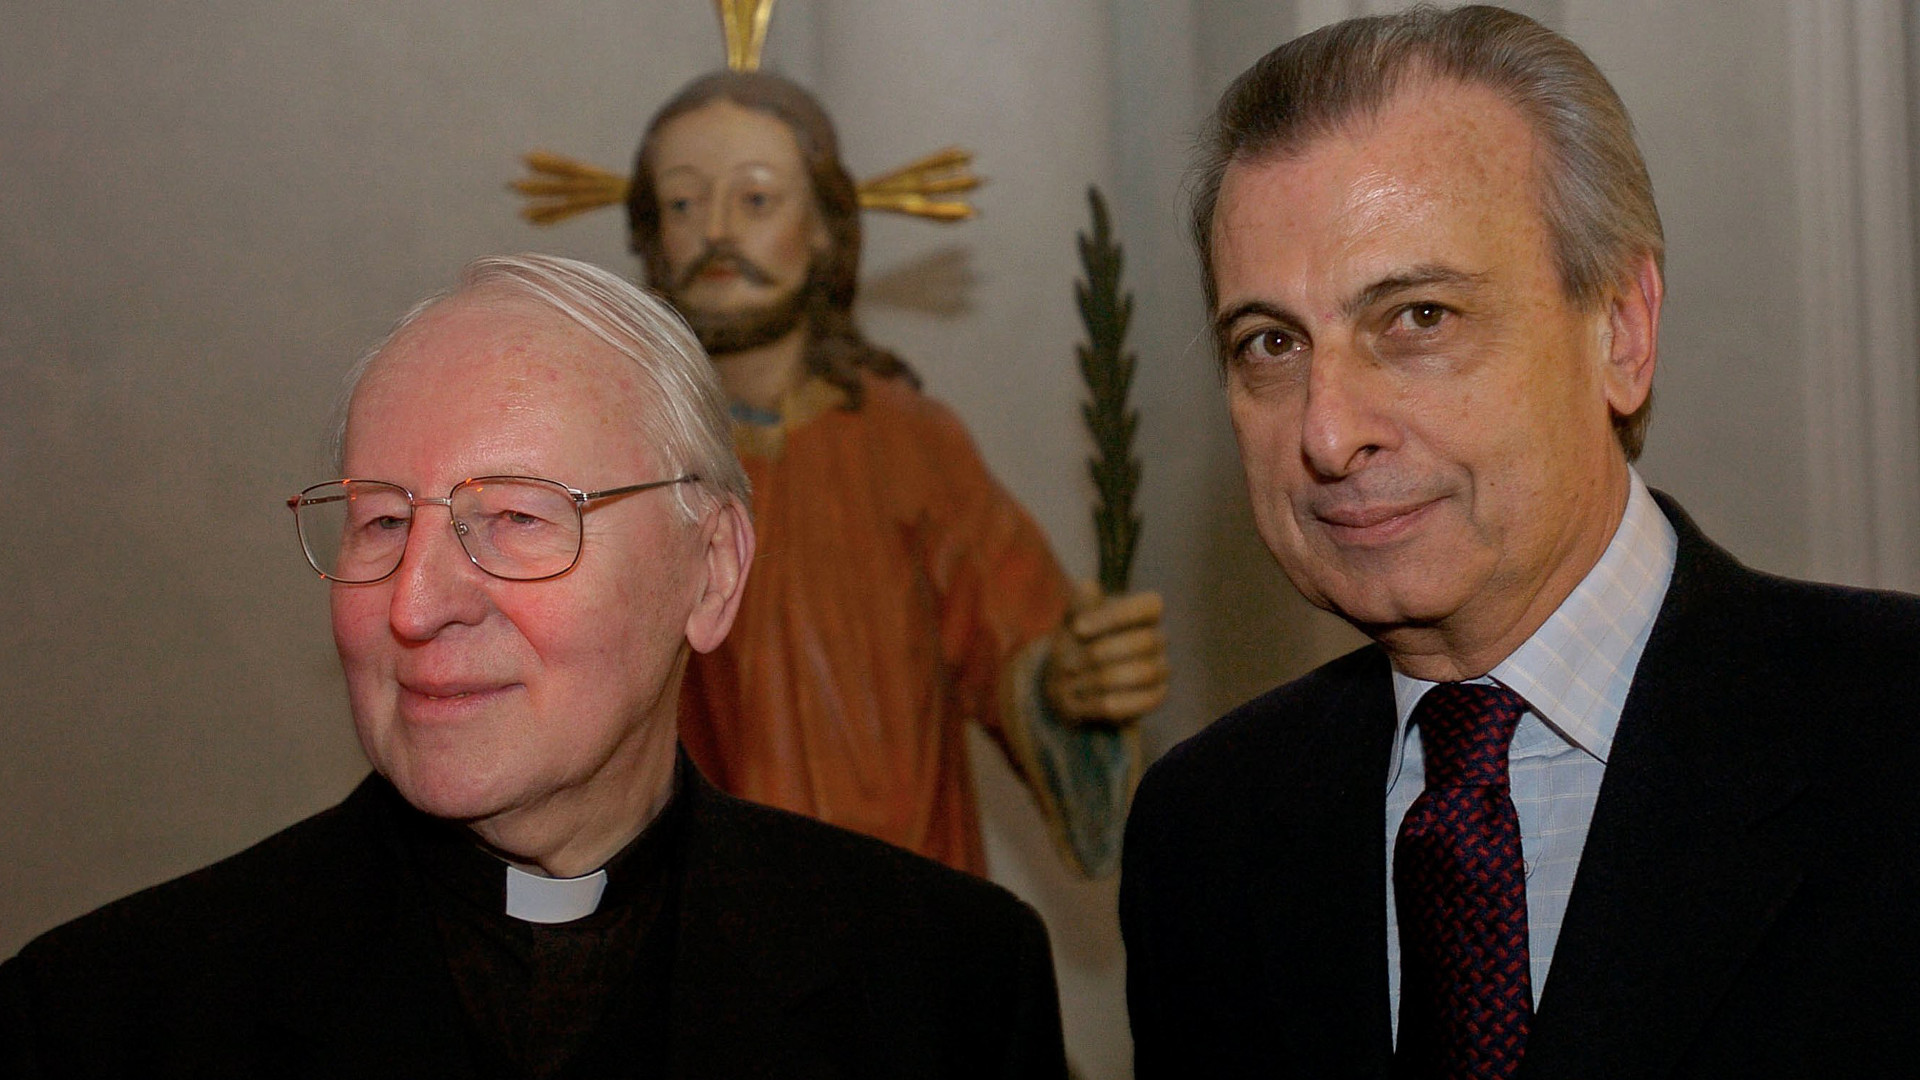 Der Päpstliche Reisemarschall Alberto Gasbarri (r.) mit dem deutschen Kardinal Friedrich Wetter